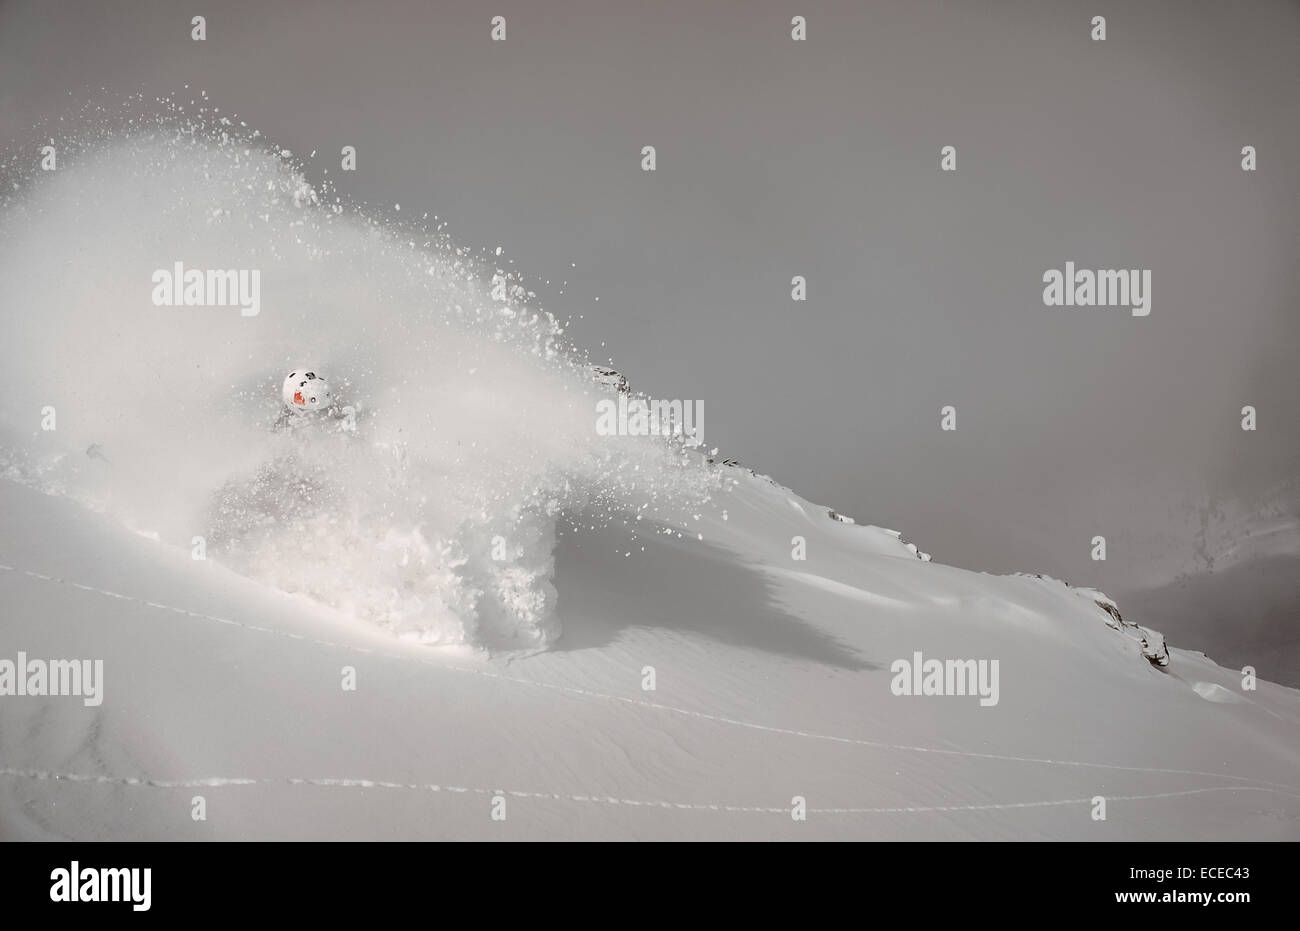 Austria, Salisburgo, Gastein, sciatore in discesa nella nube di polvere di neve Foto Stock